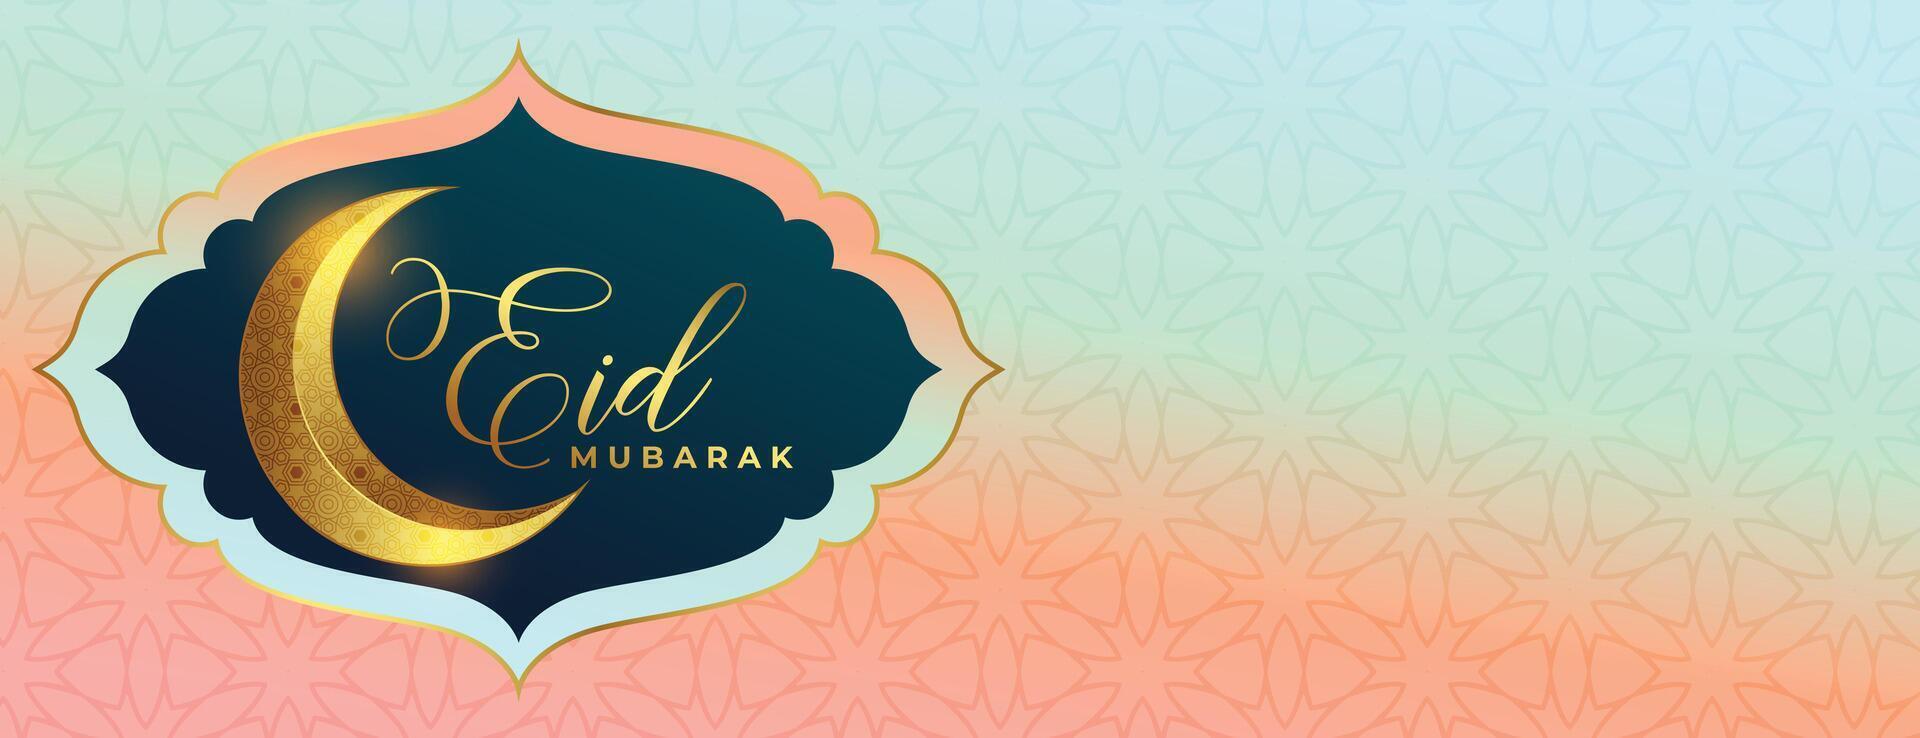 3d estilo dourado crescente eid Mubarak desejos poster para seu celebração vetor